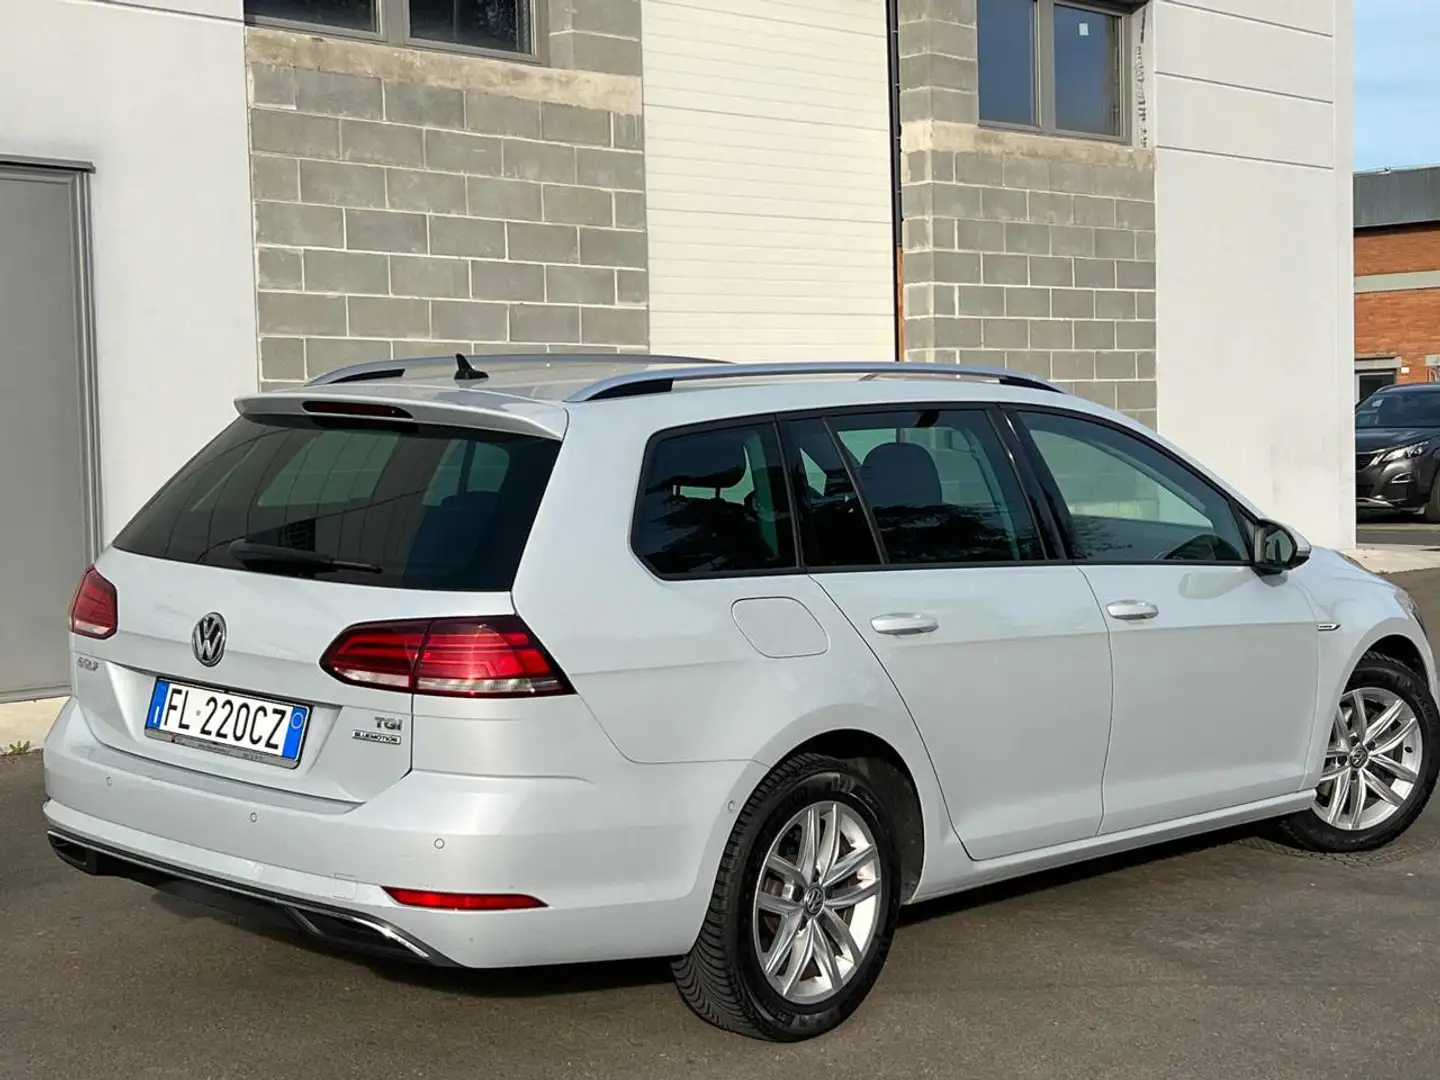 usato Volkswagen Golf Variant Station wagon a Carpi - Modena - Mo per €  12.500,-